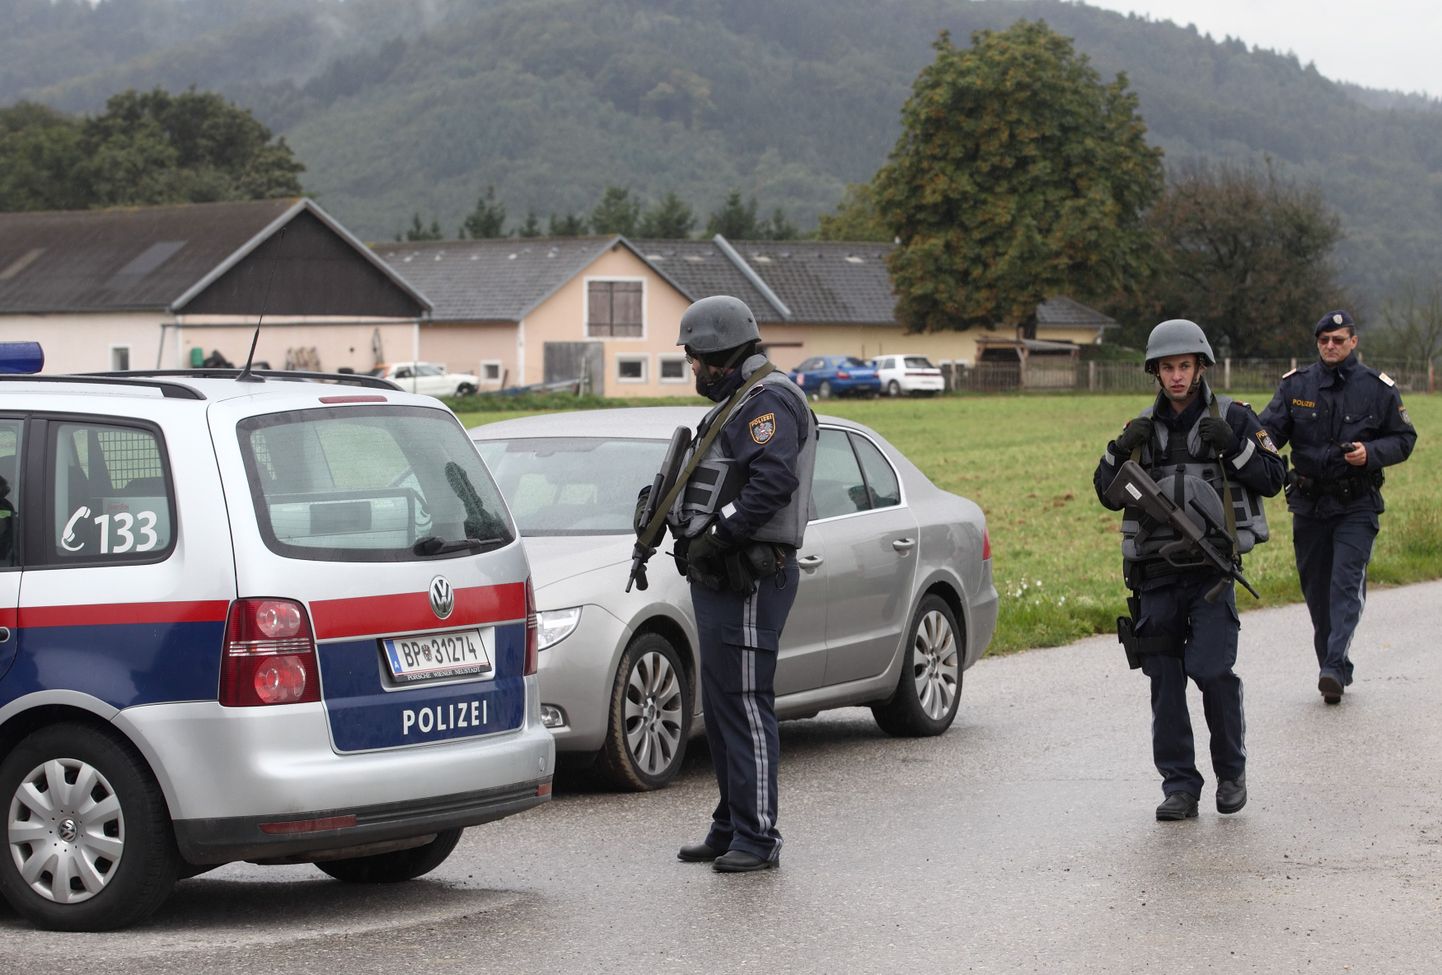 Austrias leiti neli inimest tapnud salaküti kodust suur relvaarsenal. Fotol politsei eriüksus sündmuskohal